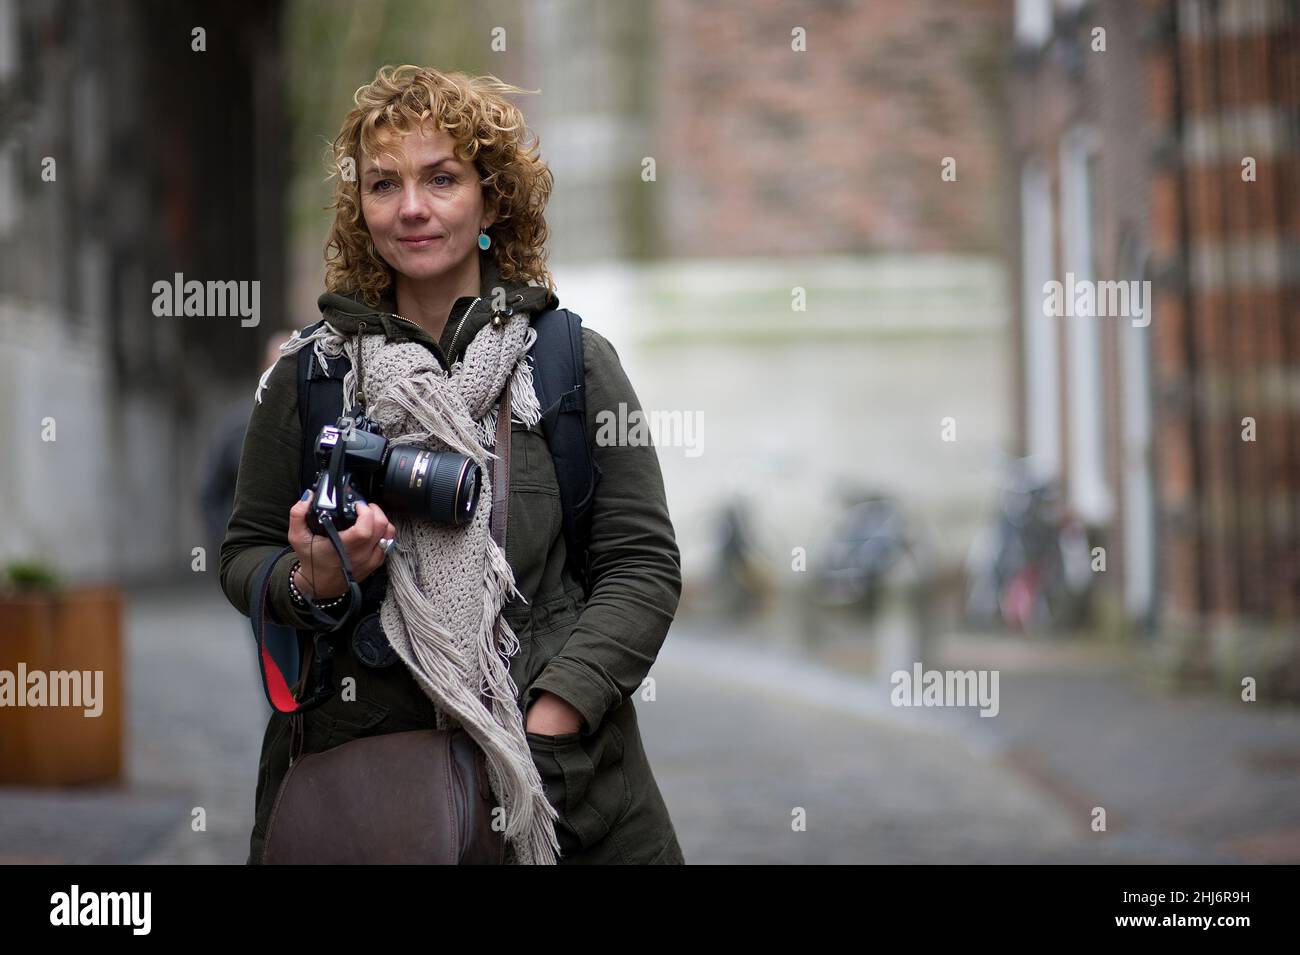 Utrecht, Niederlande. Weibliche, professionelle Straßenfotografinnen, die durch die Stadt Streifen, um neue Aufnahmen zu finden und über Stock-Fotografie-Agenten zu veröffentlichen. Stockfoto